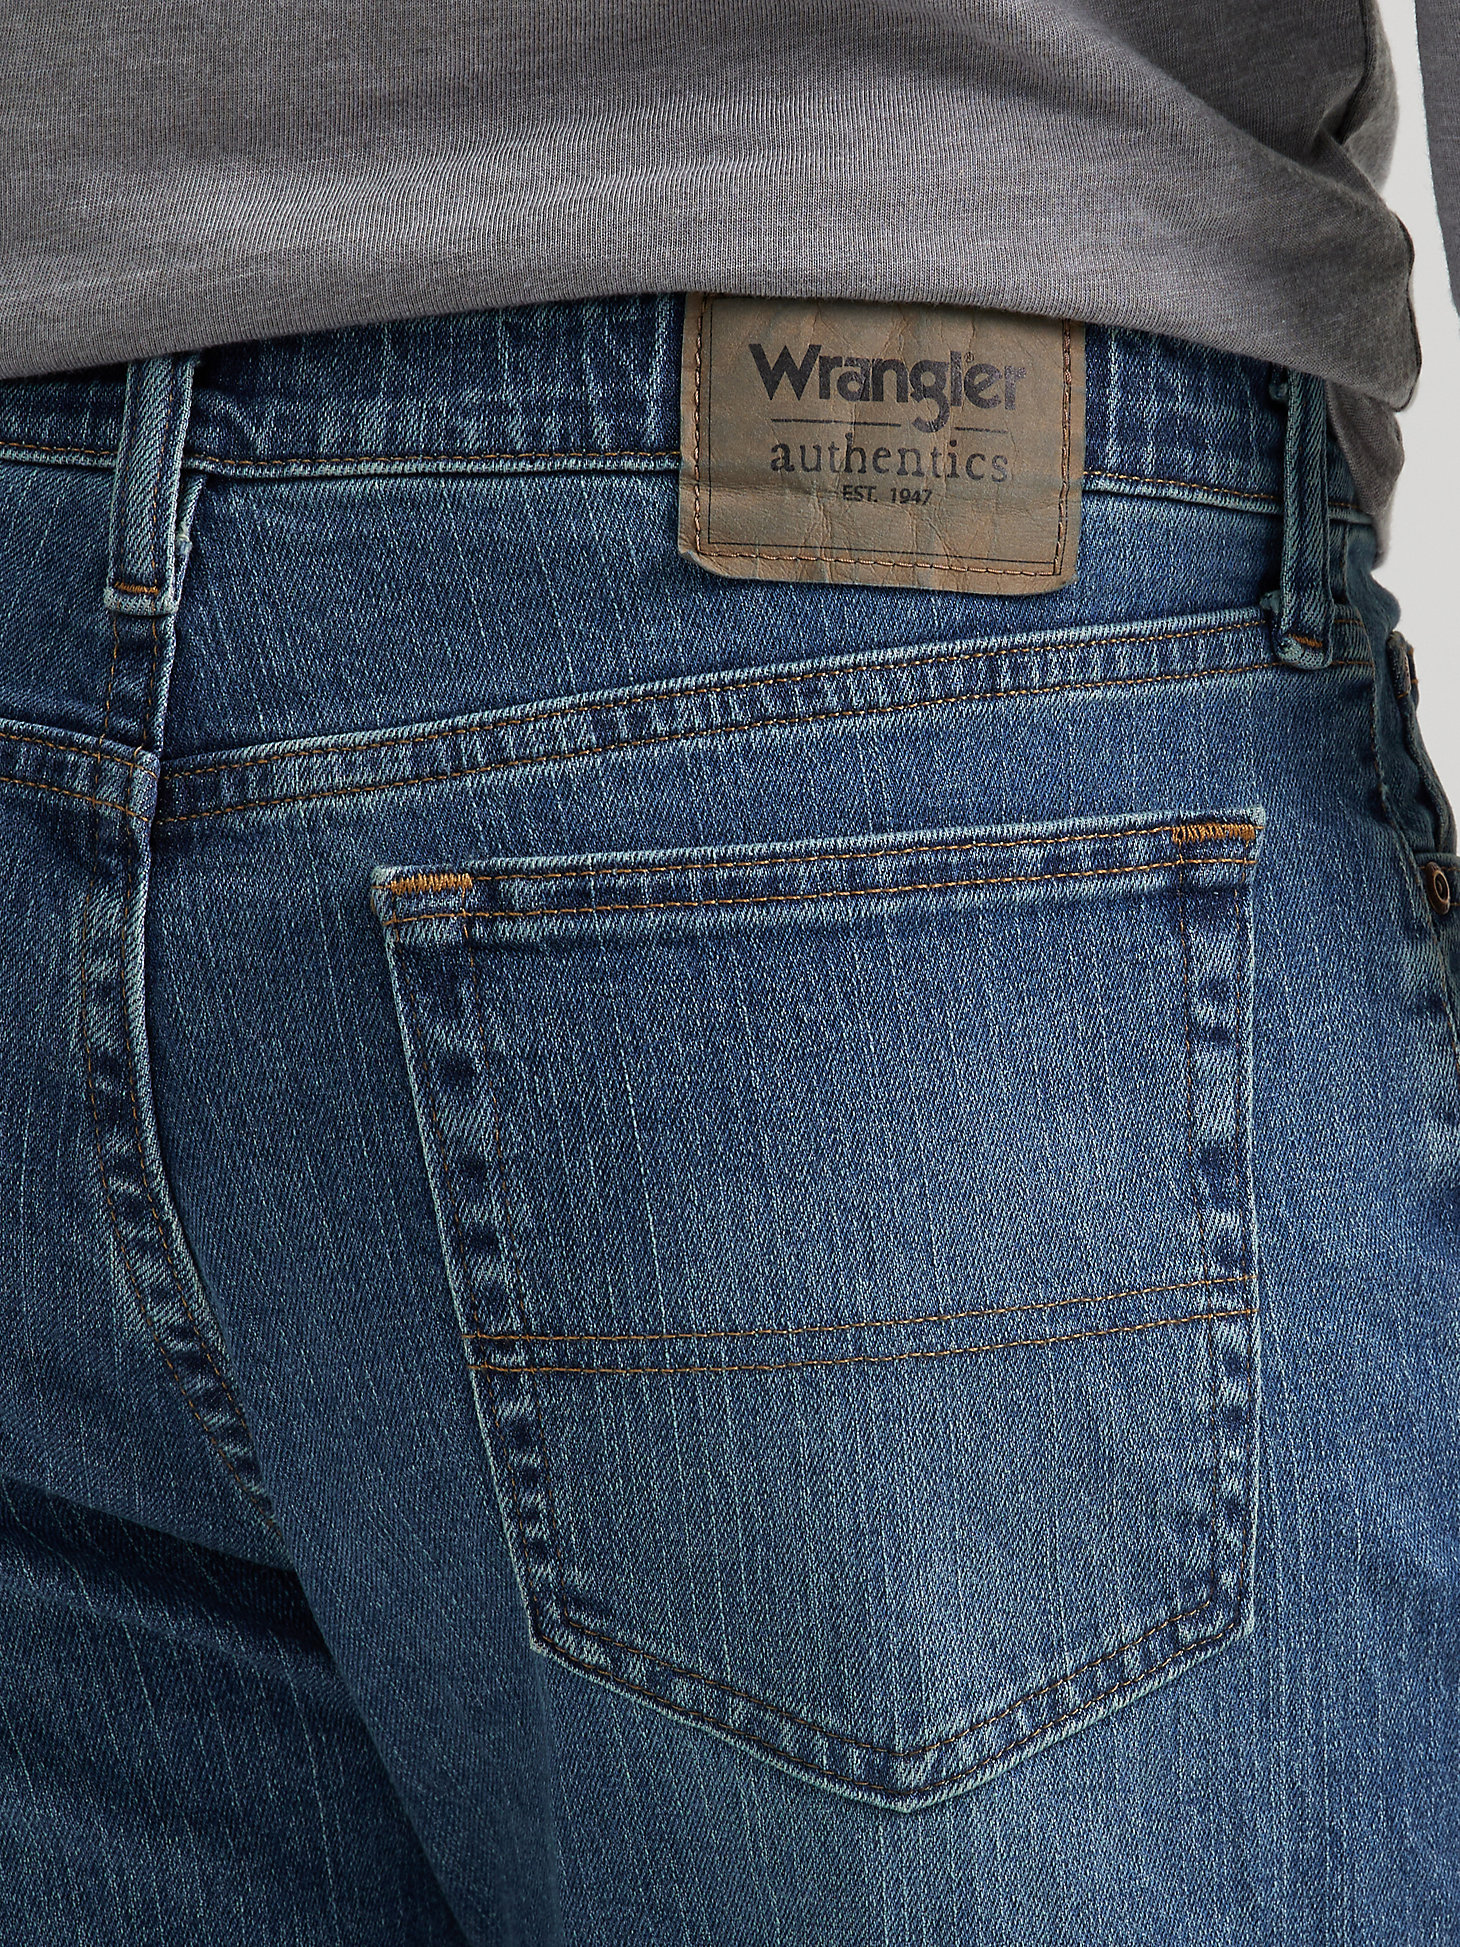 Men's Wrangler Authentics® Regular Fit Comfort Waist Jean in Blue Ocean alternative view 2